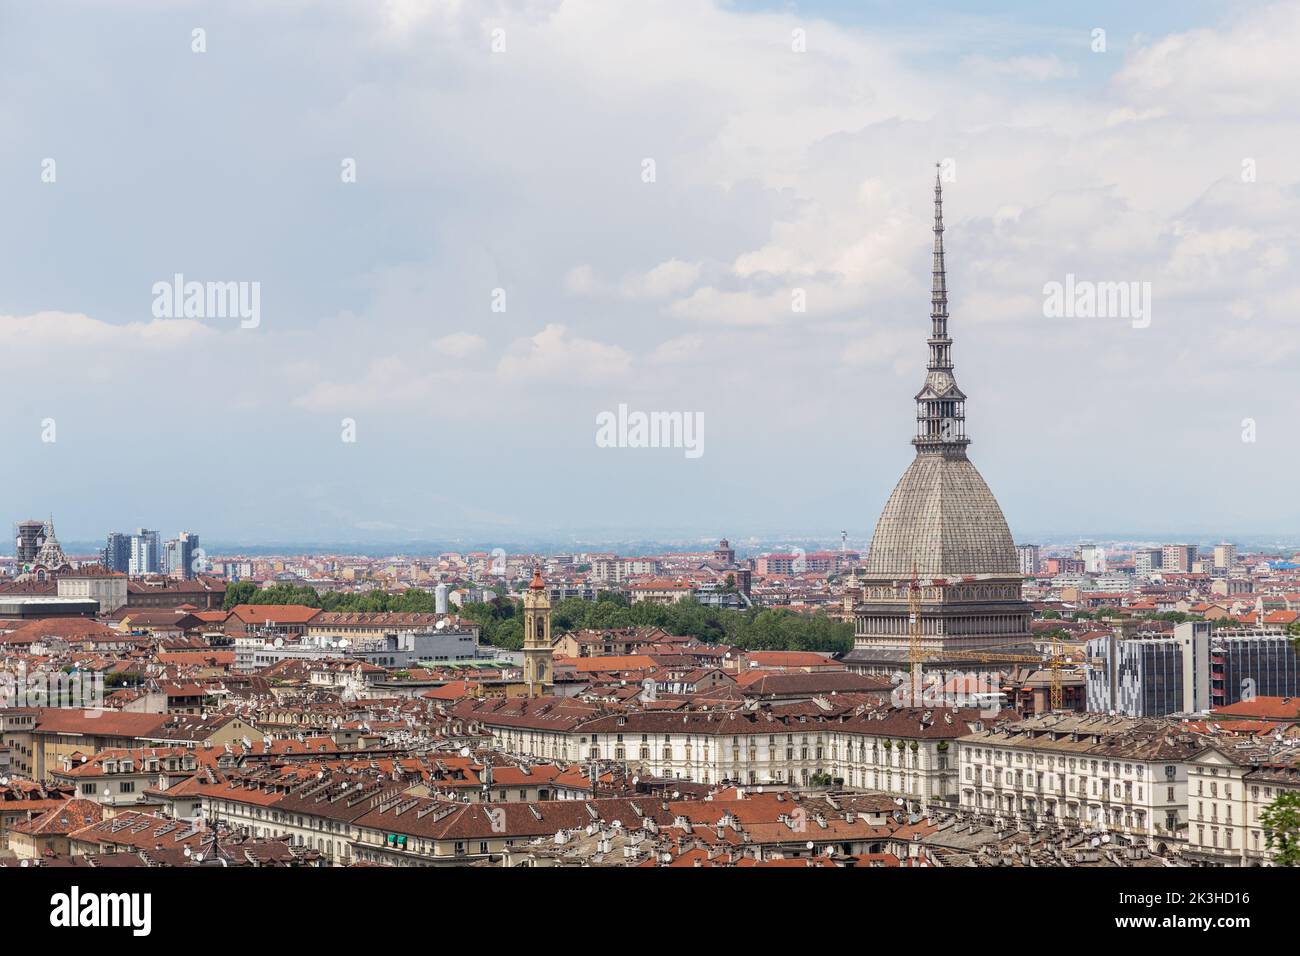 TURIN, ITALIE - 16 MAI 2018 : vue aérienne de la ville avec flèche de la Mole Antonelliana. Banque D'Images